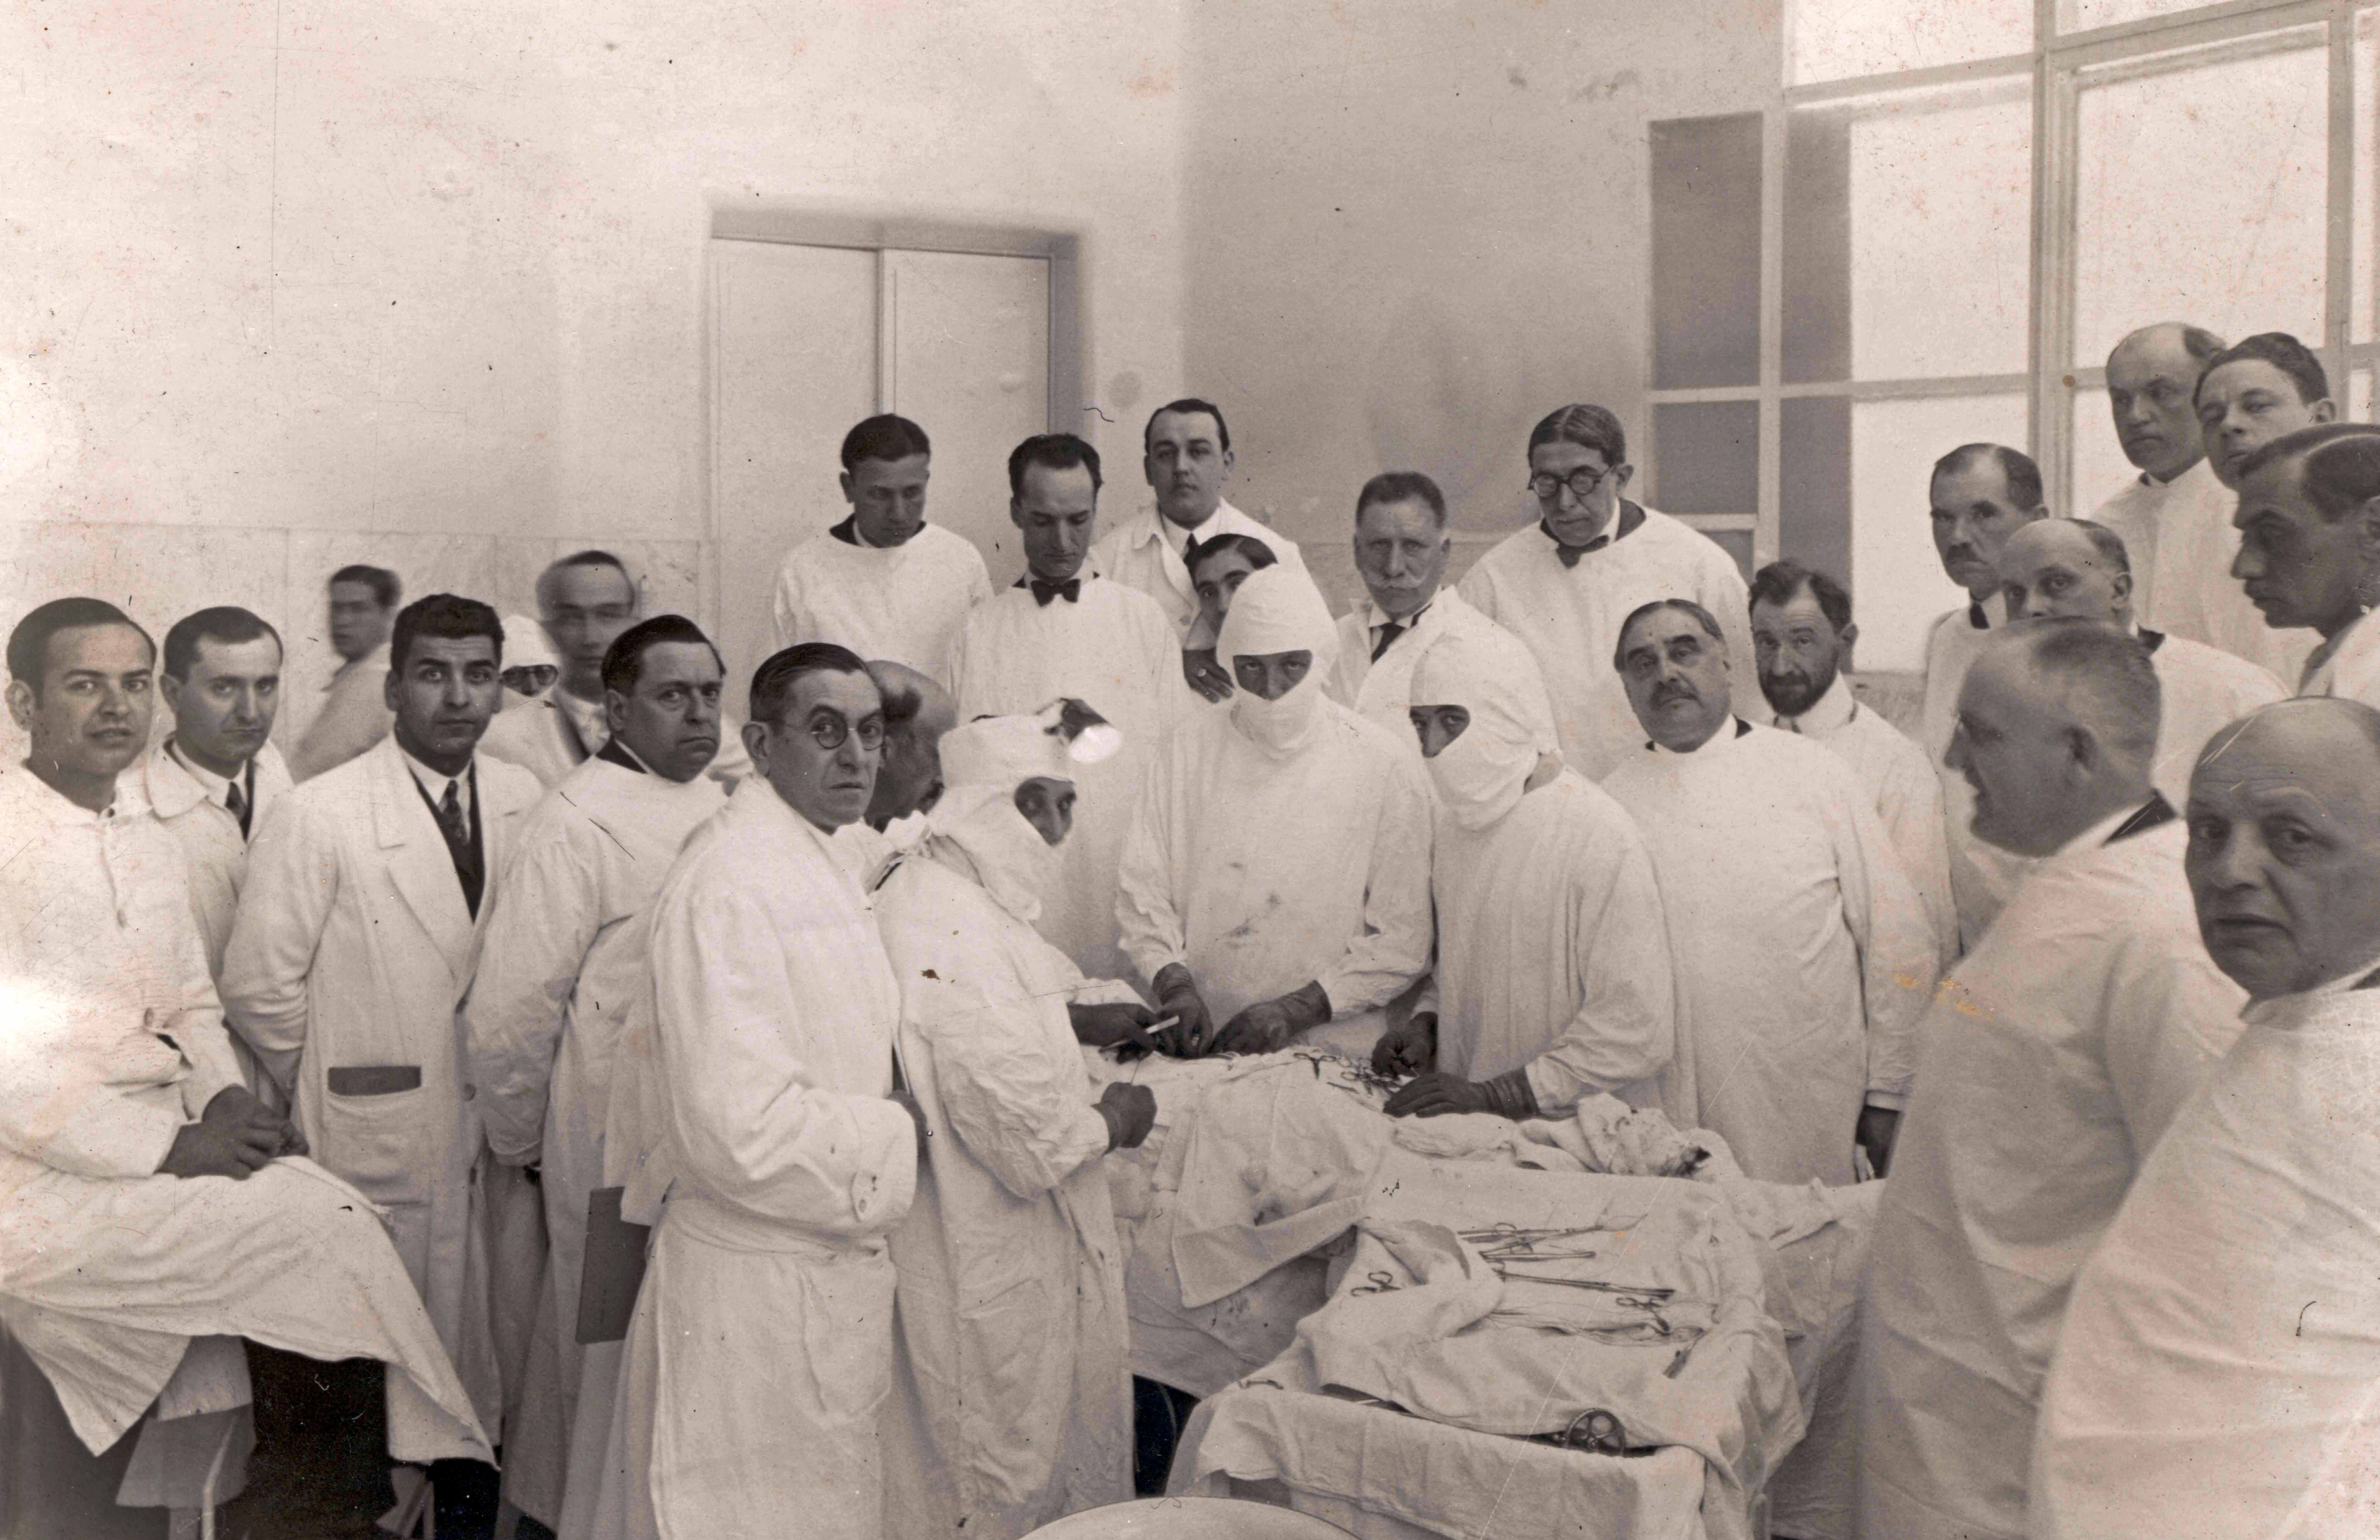 Els doctors Josep Trueta i Manuel Corachan practiquen un procediment quirúrgic davant la mirada d’altres col·legues l'any 1930